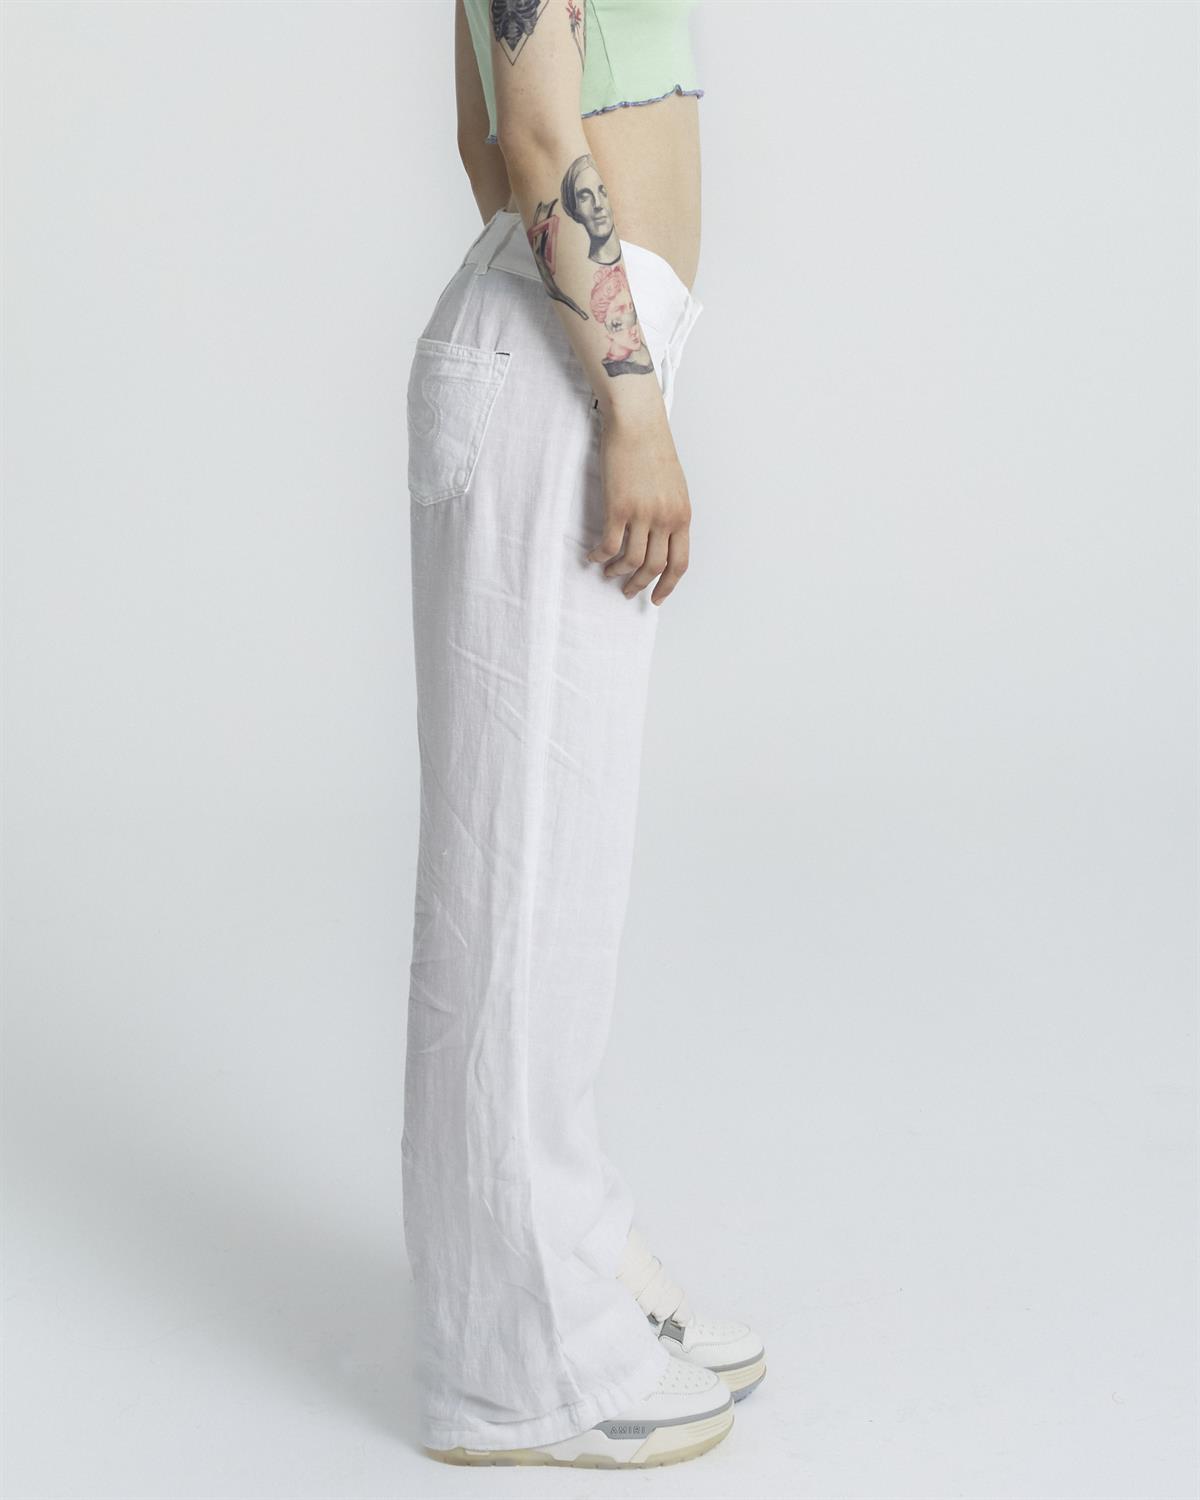 U.O  White Linen Pantolon Woman